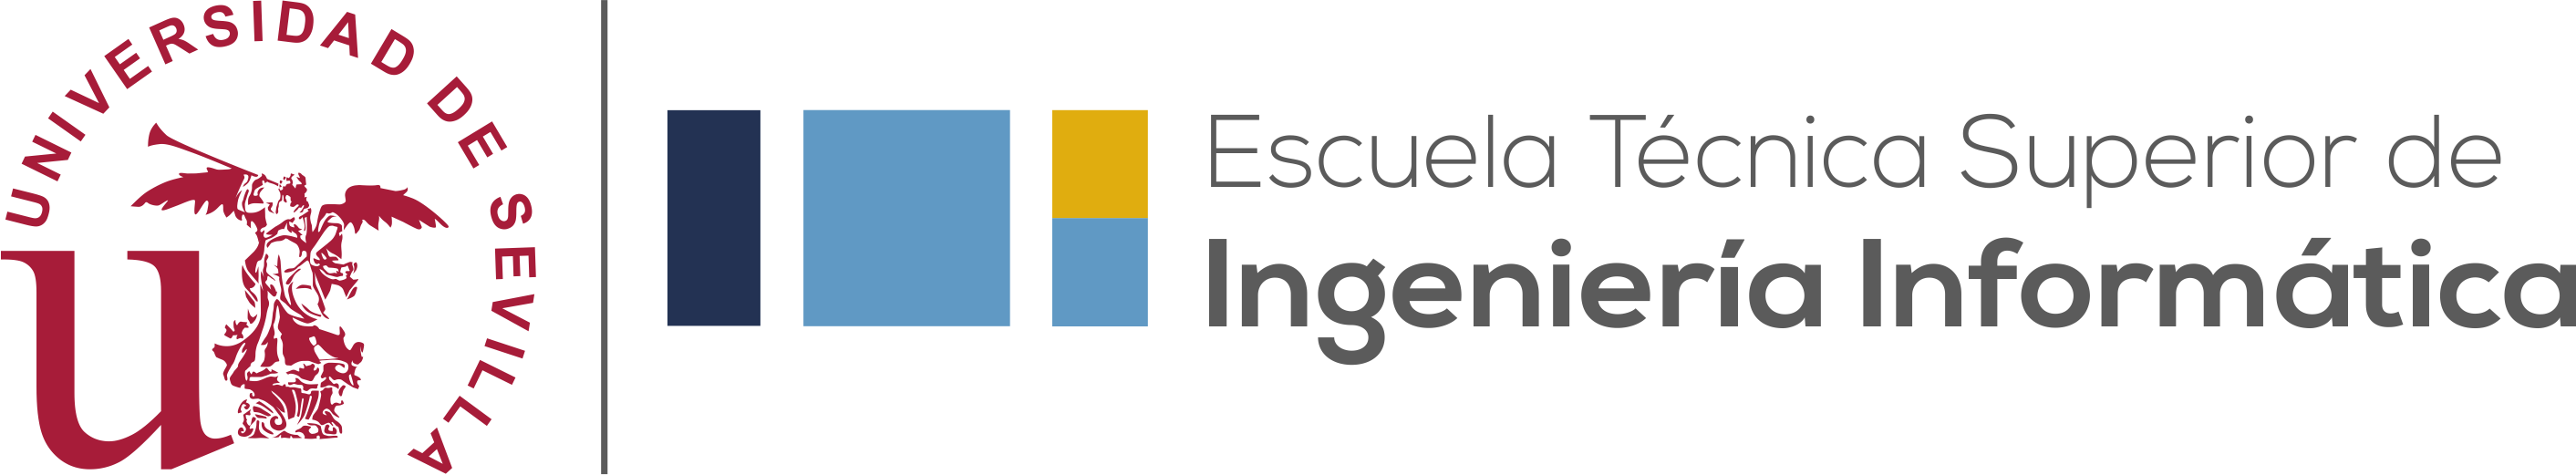 Logo ETSII US